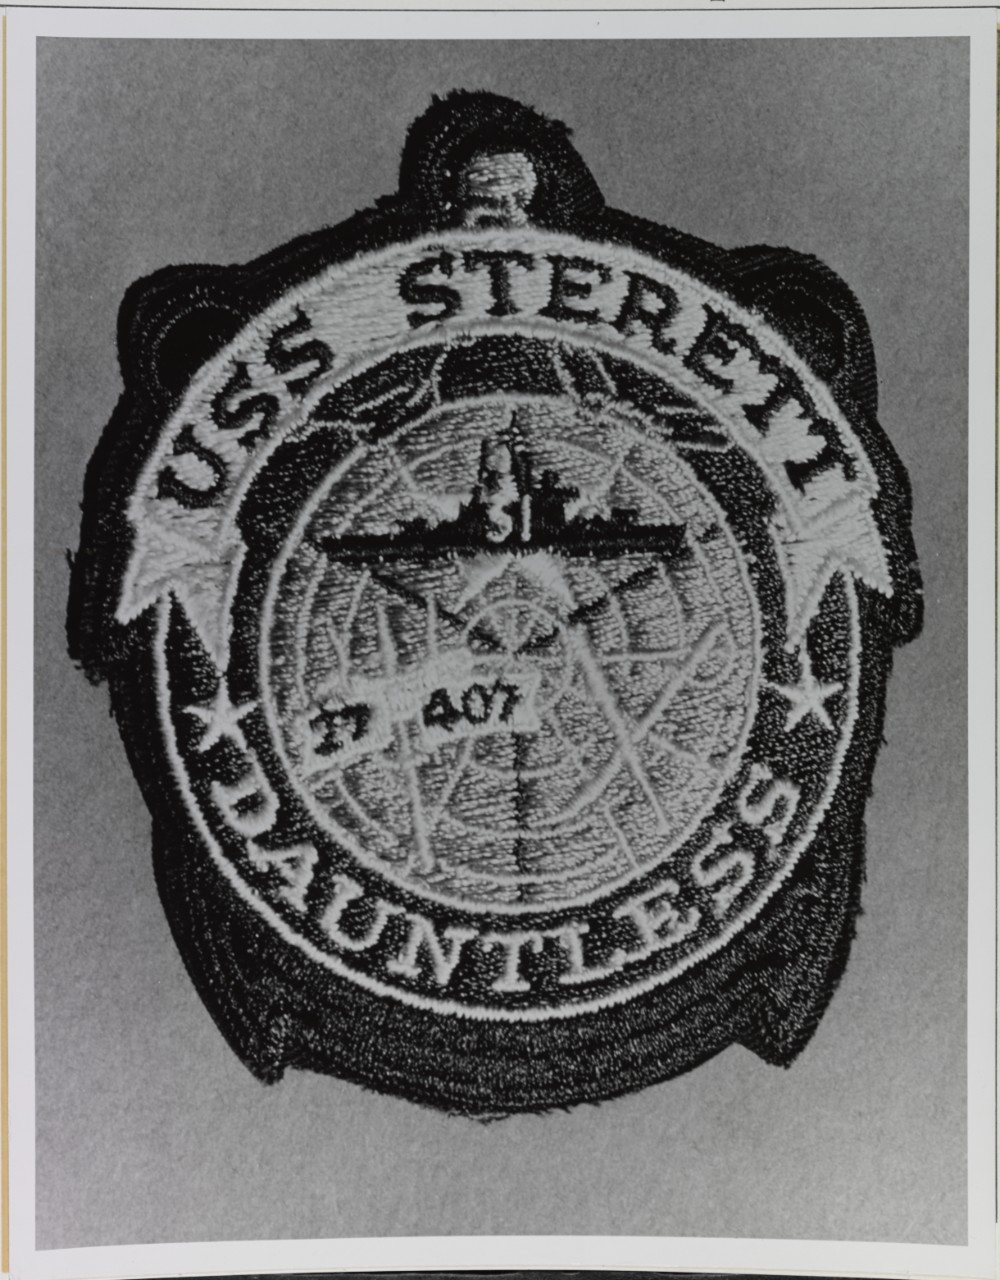 Insignia: USS STERETT (DLG-31)